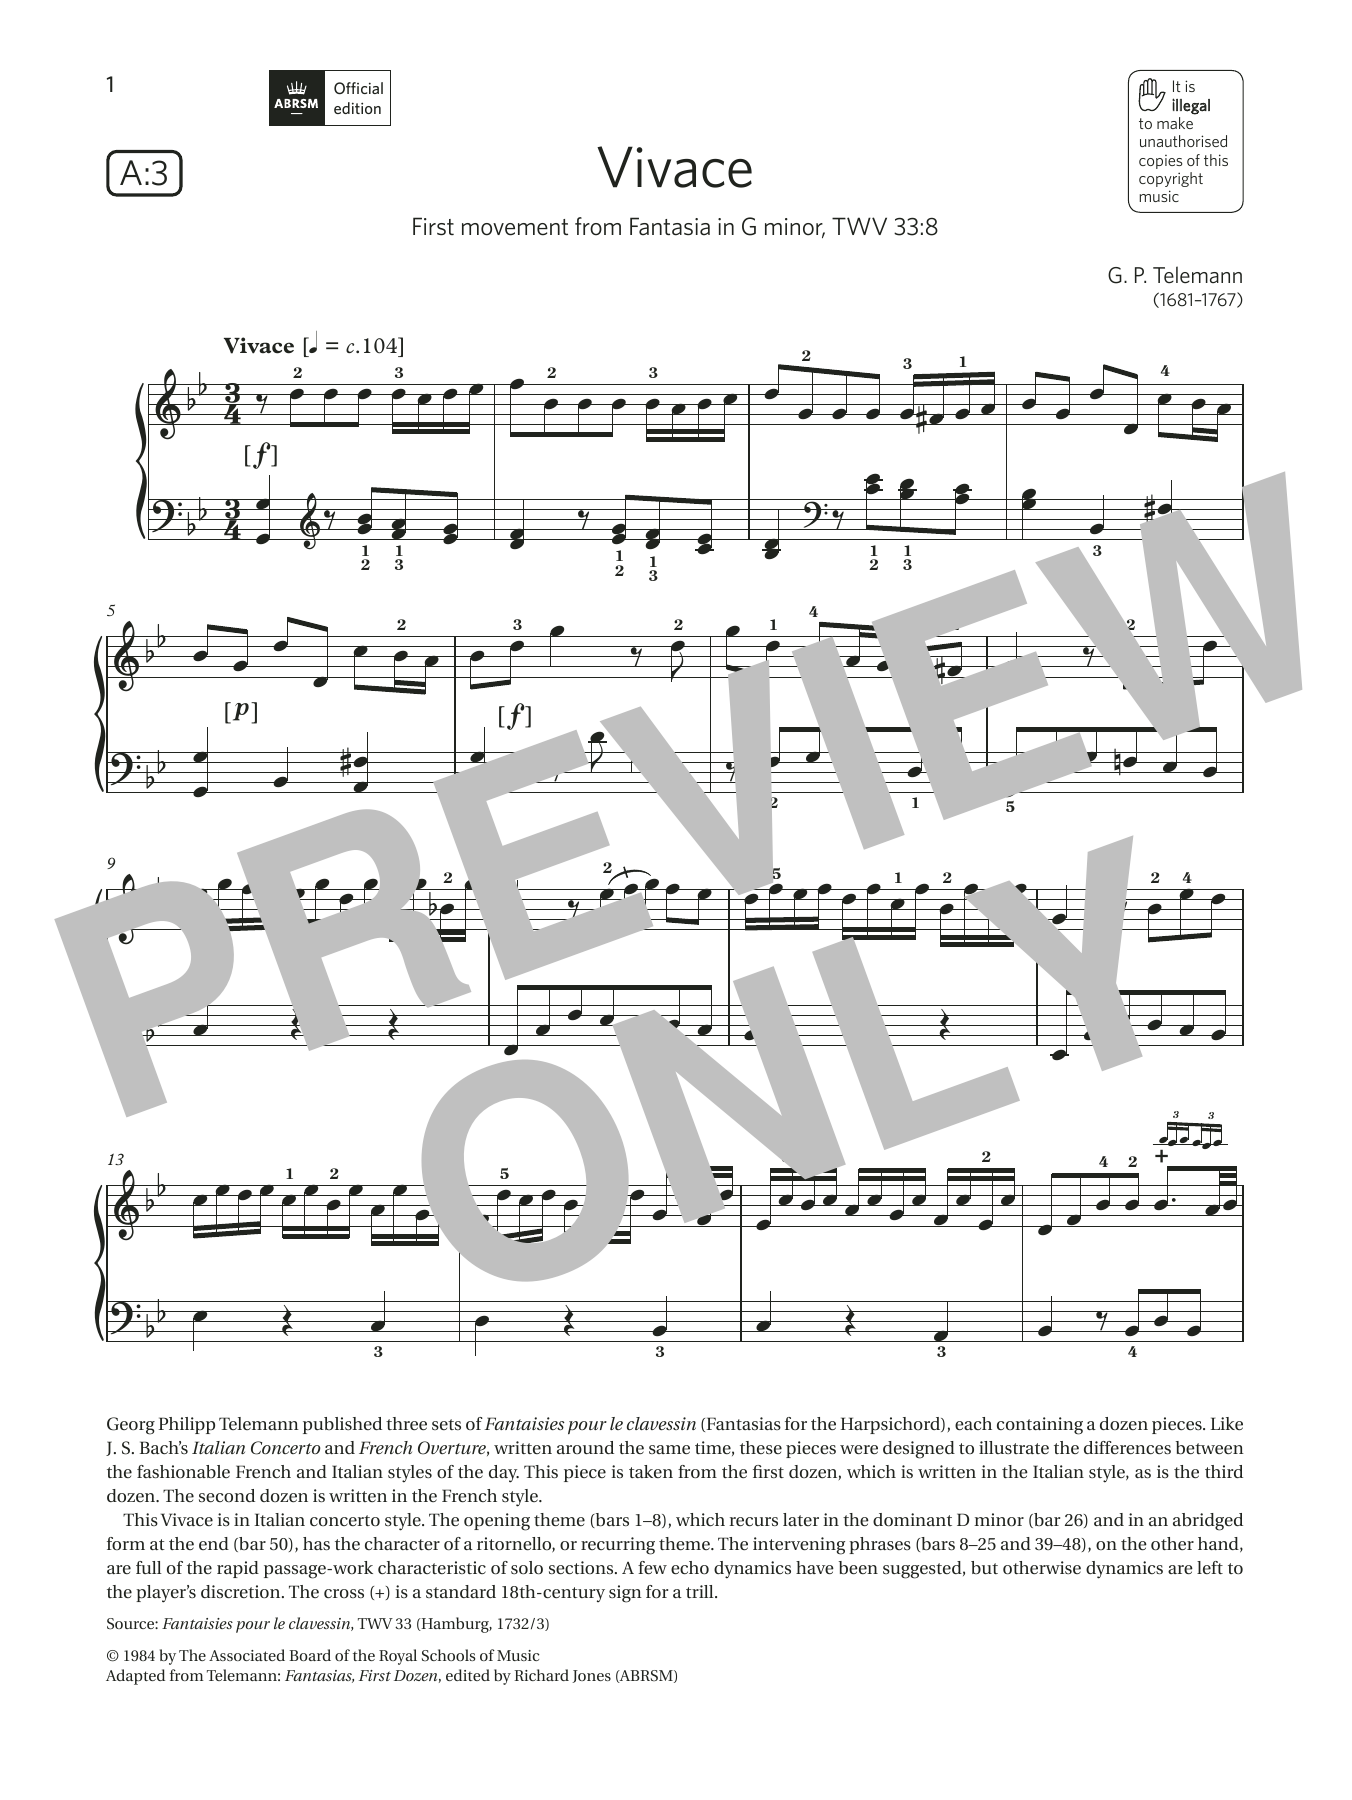 Download G. P. Telemann Vivace (Grade 7, list A3, from the ABRS Sheet Music